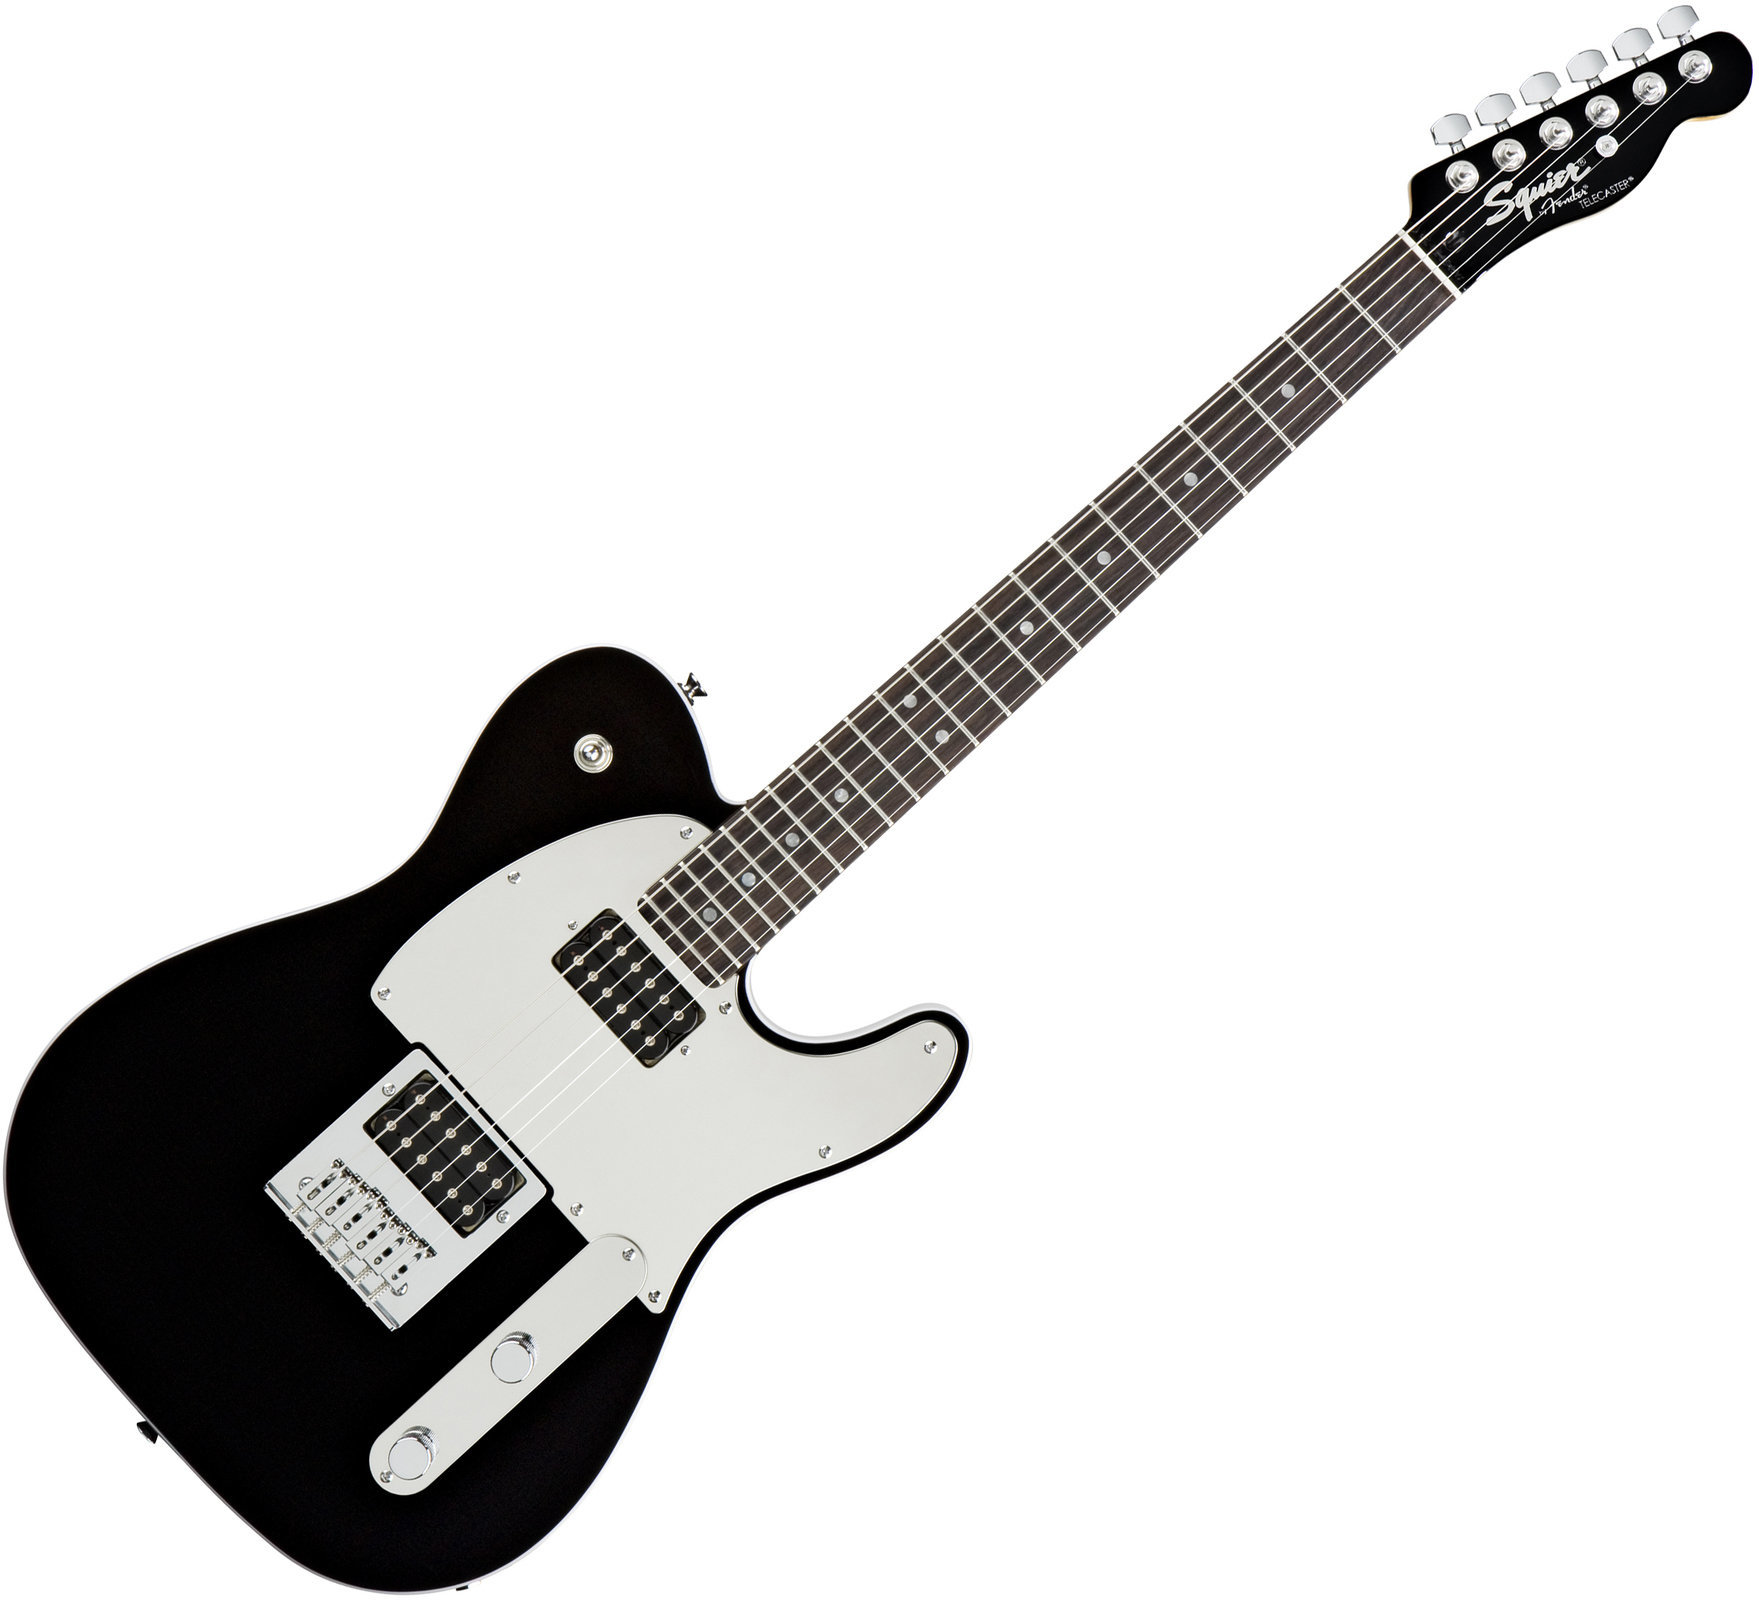 Signature Electric Guitar Fender Squier J5 Telecaster RW Black